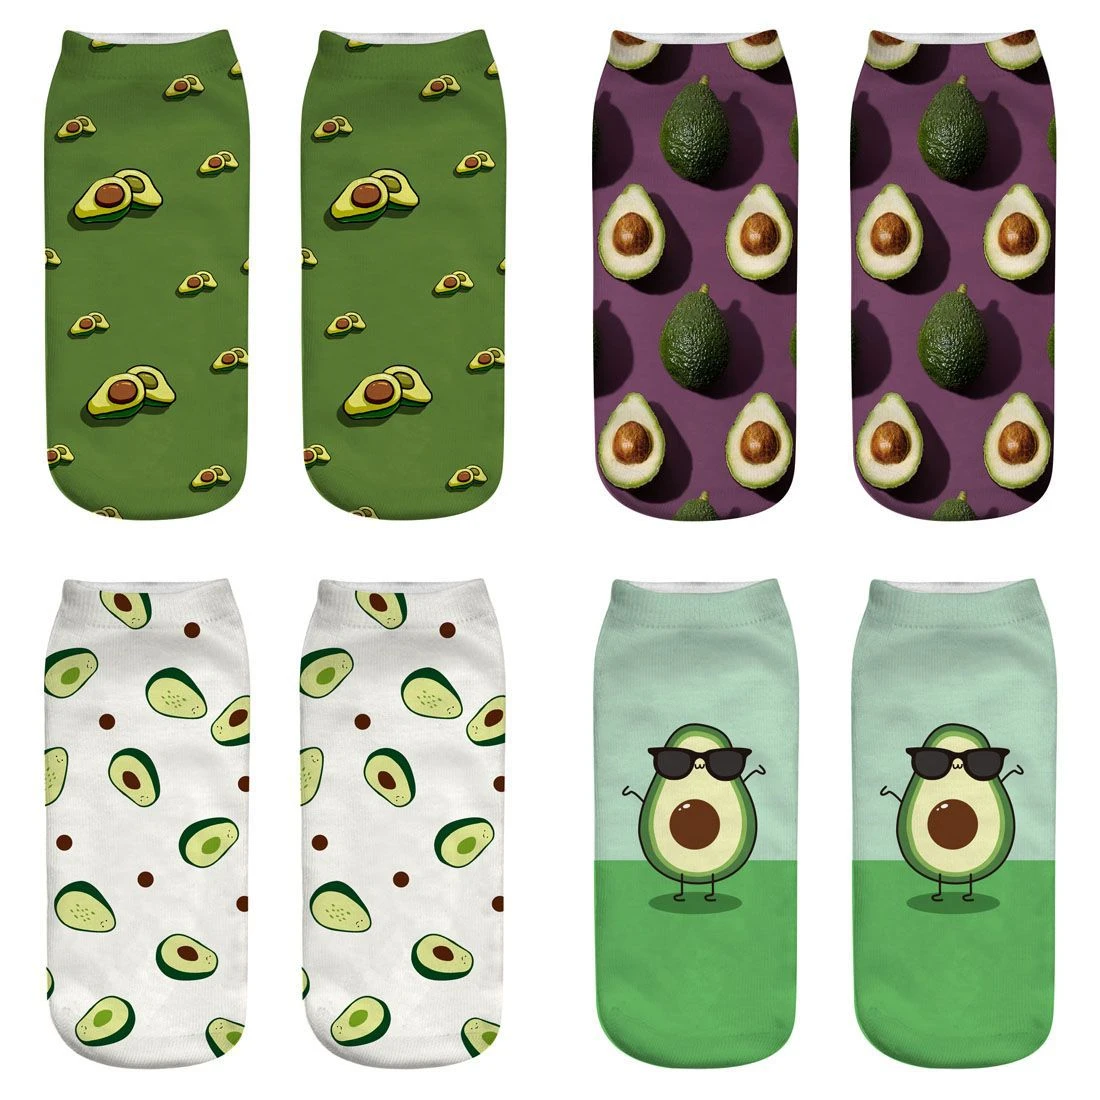 New 3D Printed Socks Women Unisex Cute Low Cut Ankle Socks Multiple Colors Women Sock Women's Casual avocado fruit funny Socks